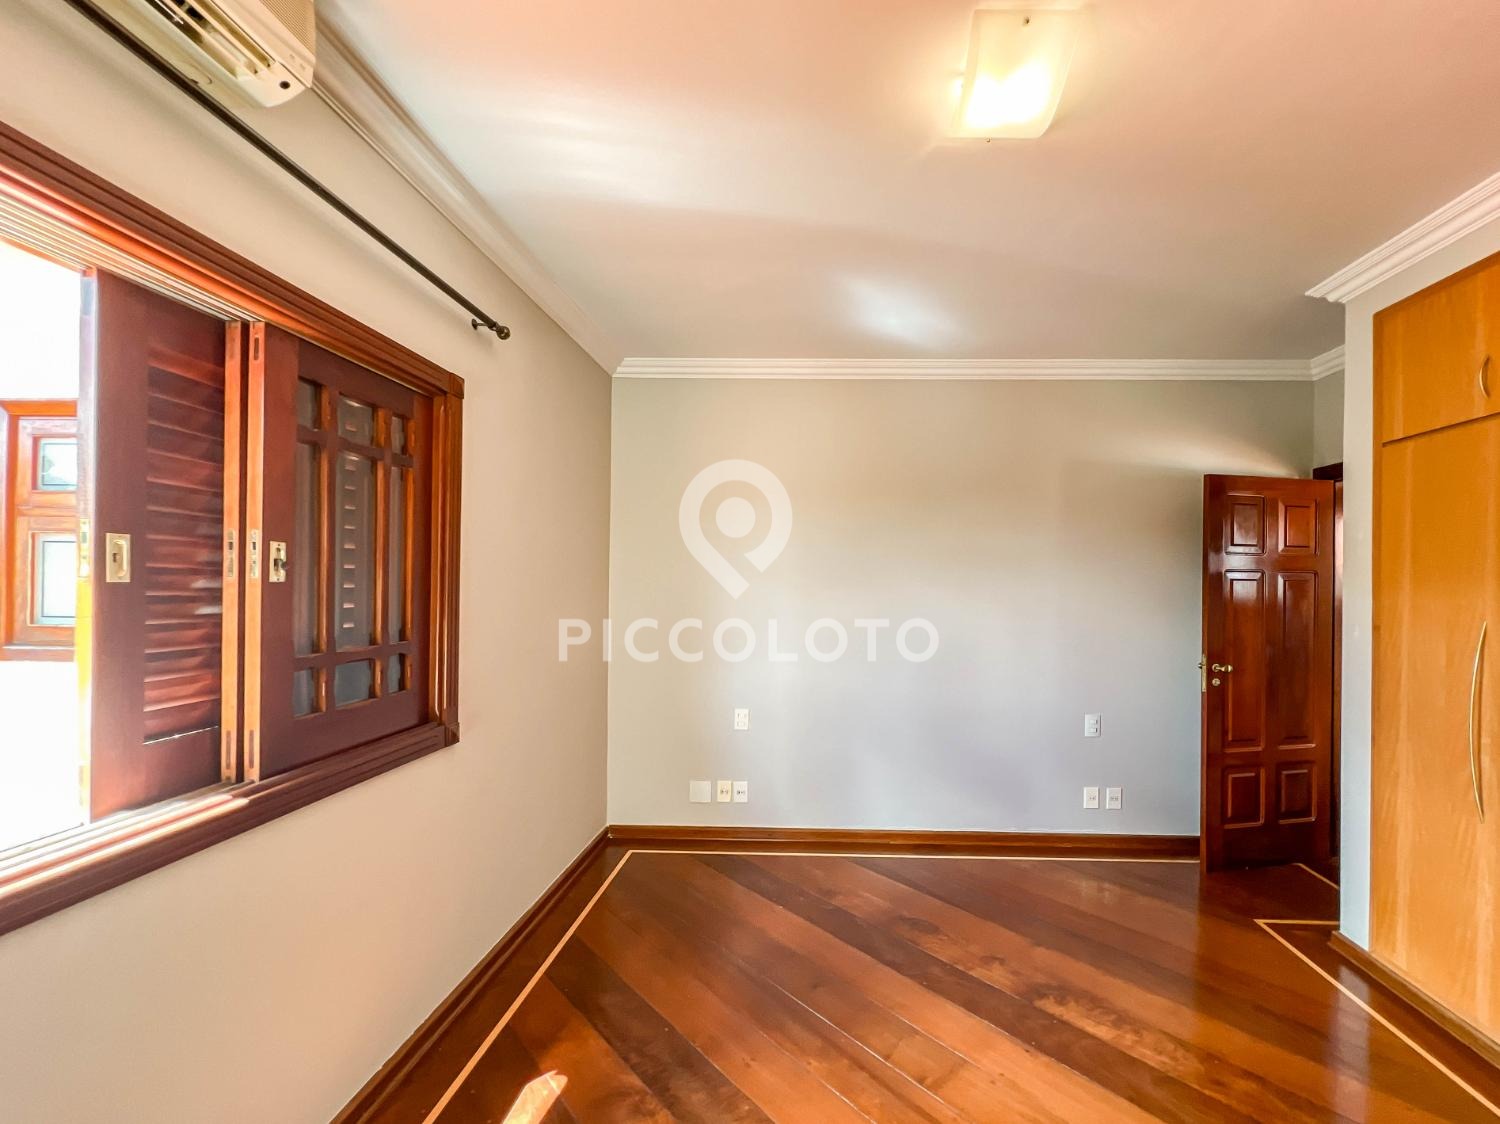 Piccoloto -Casa à venda no Vila Embaré em Valinhos